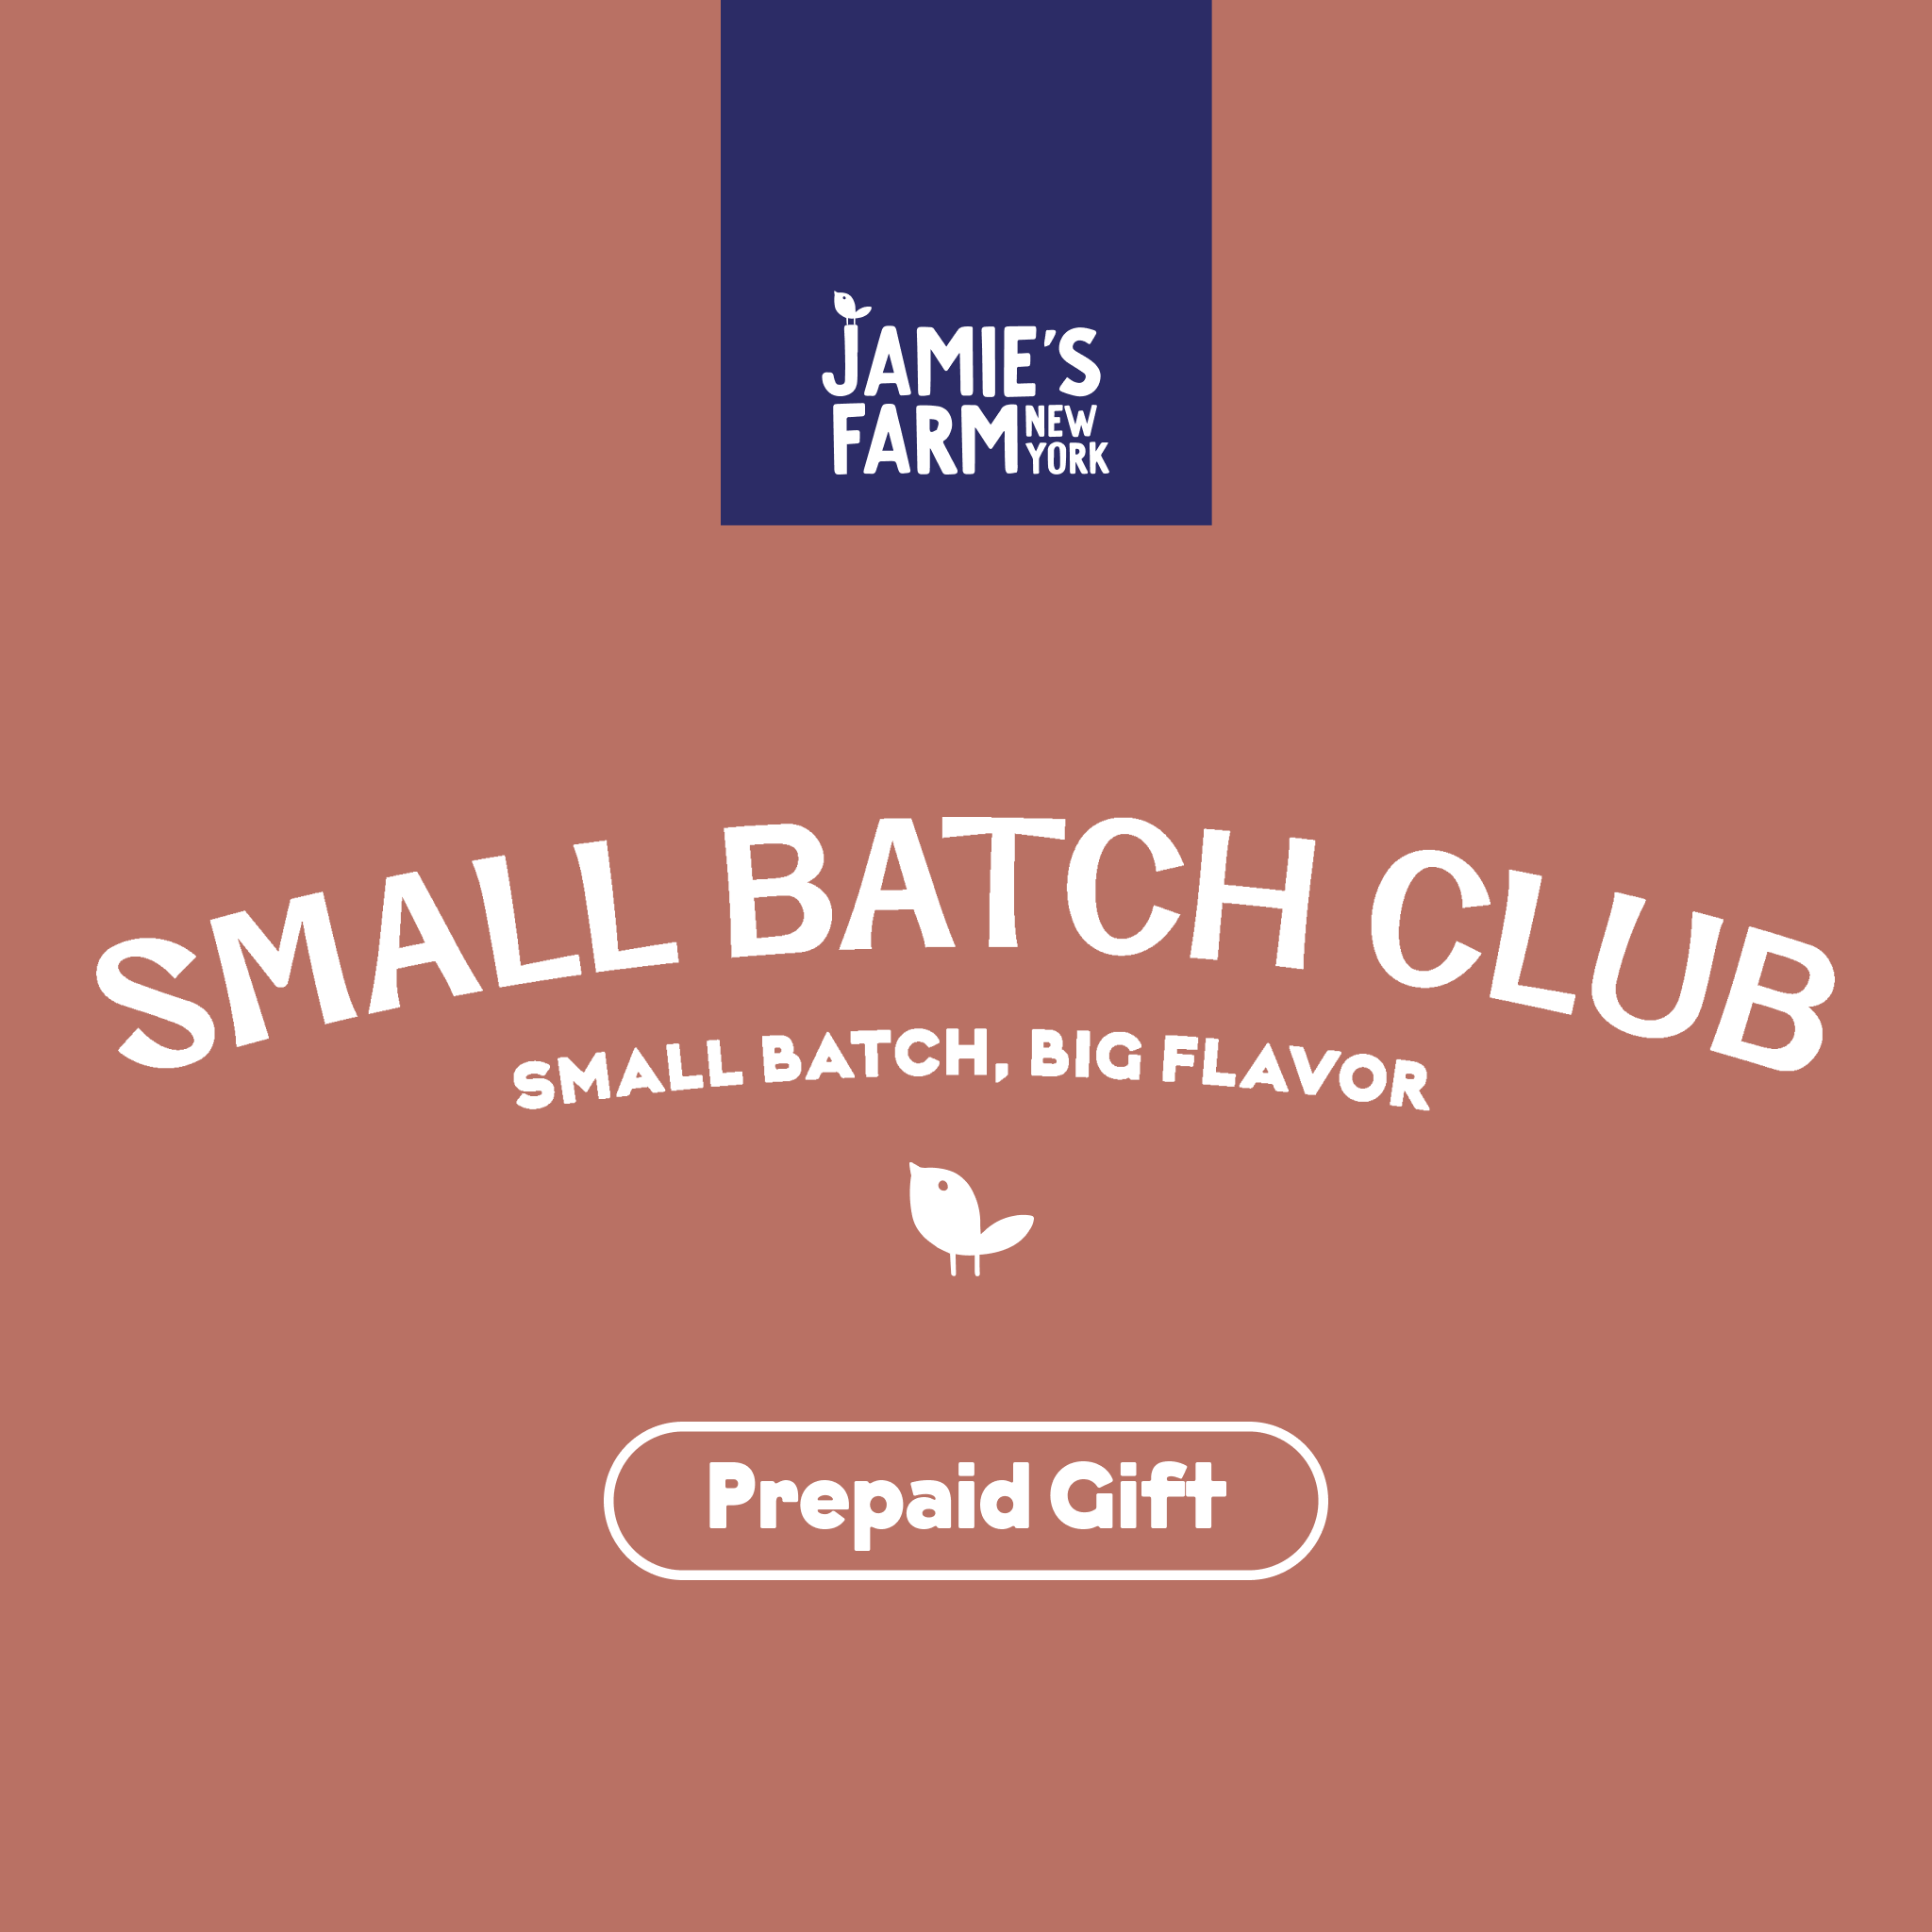 Small Batch Club - Three Seasonal Bags (1-year)